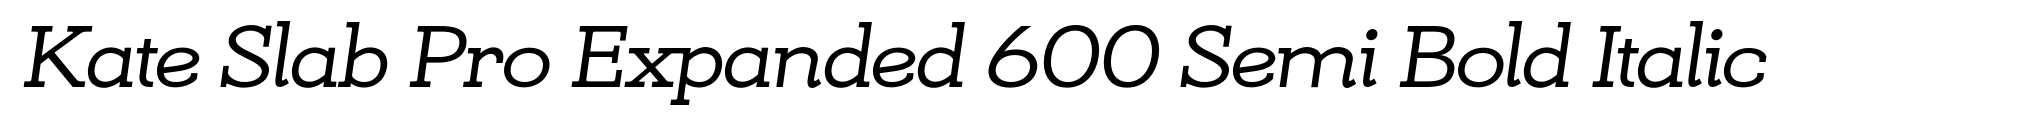 Kate Slab Pro Expanded 600 Semi Bold Italic image